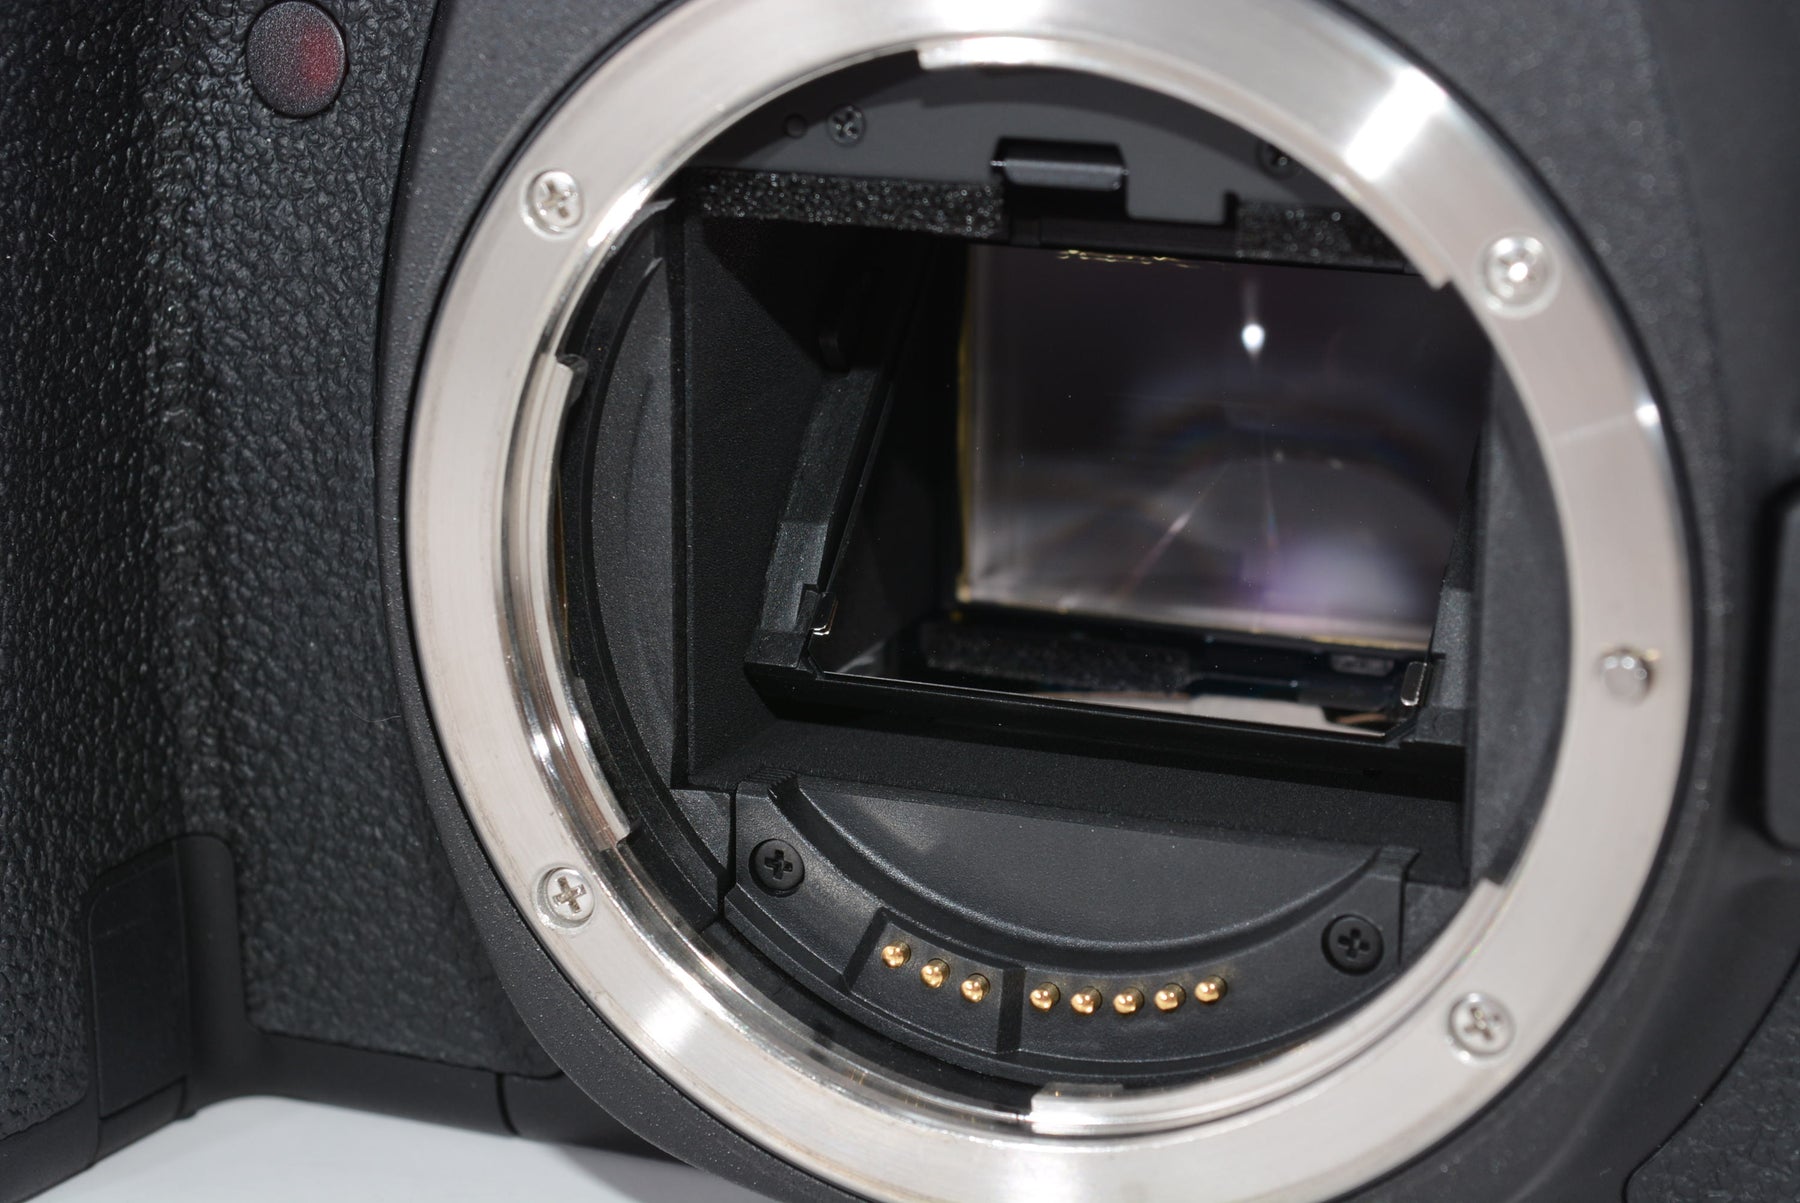 【外観特上級】Canon デジタル一眼レフカメラ EOS 6Dボディ EOS6D